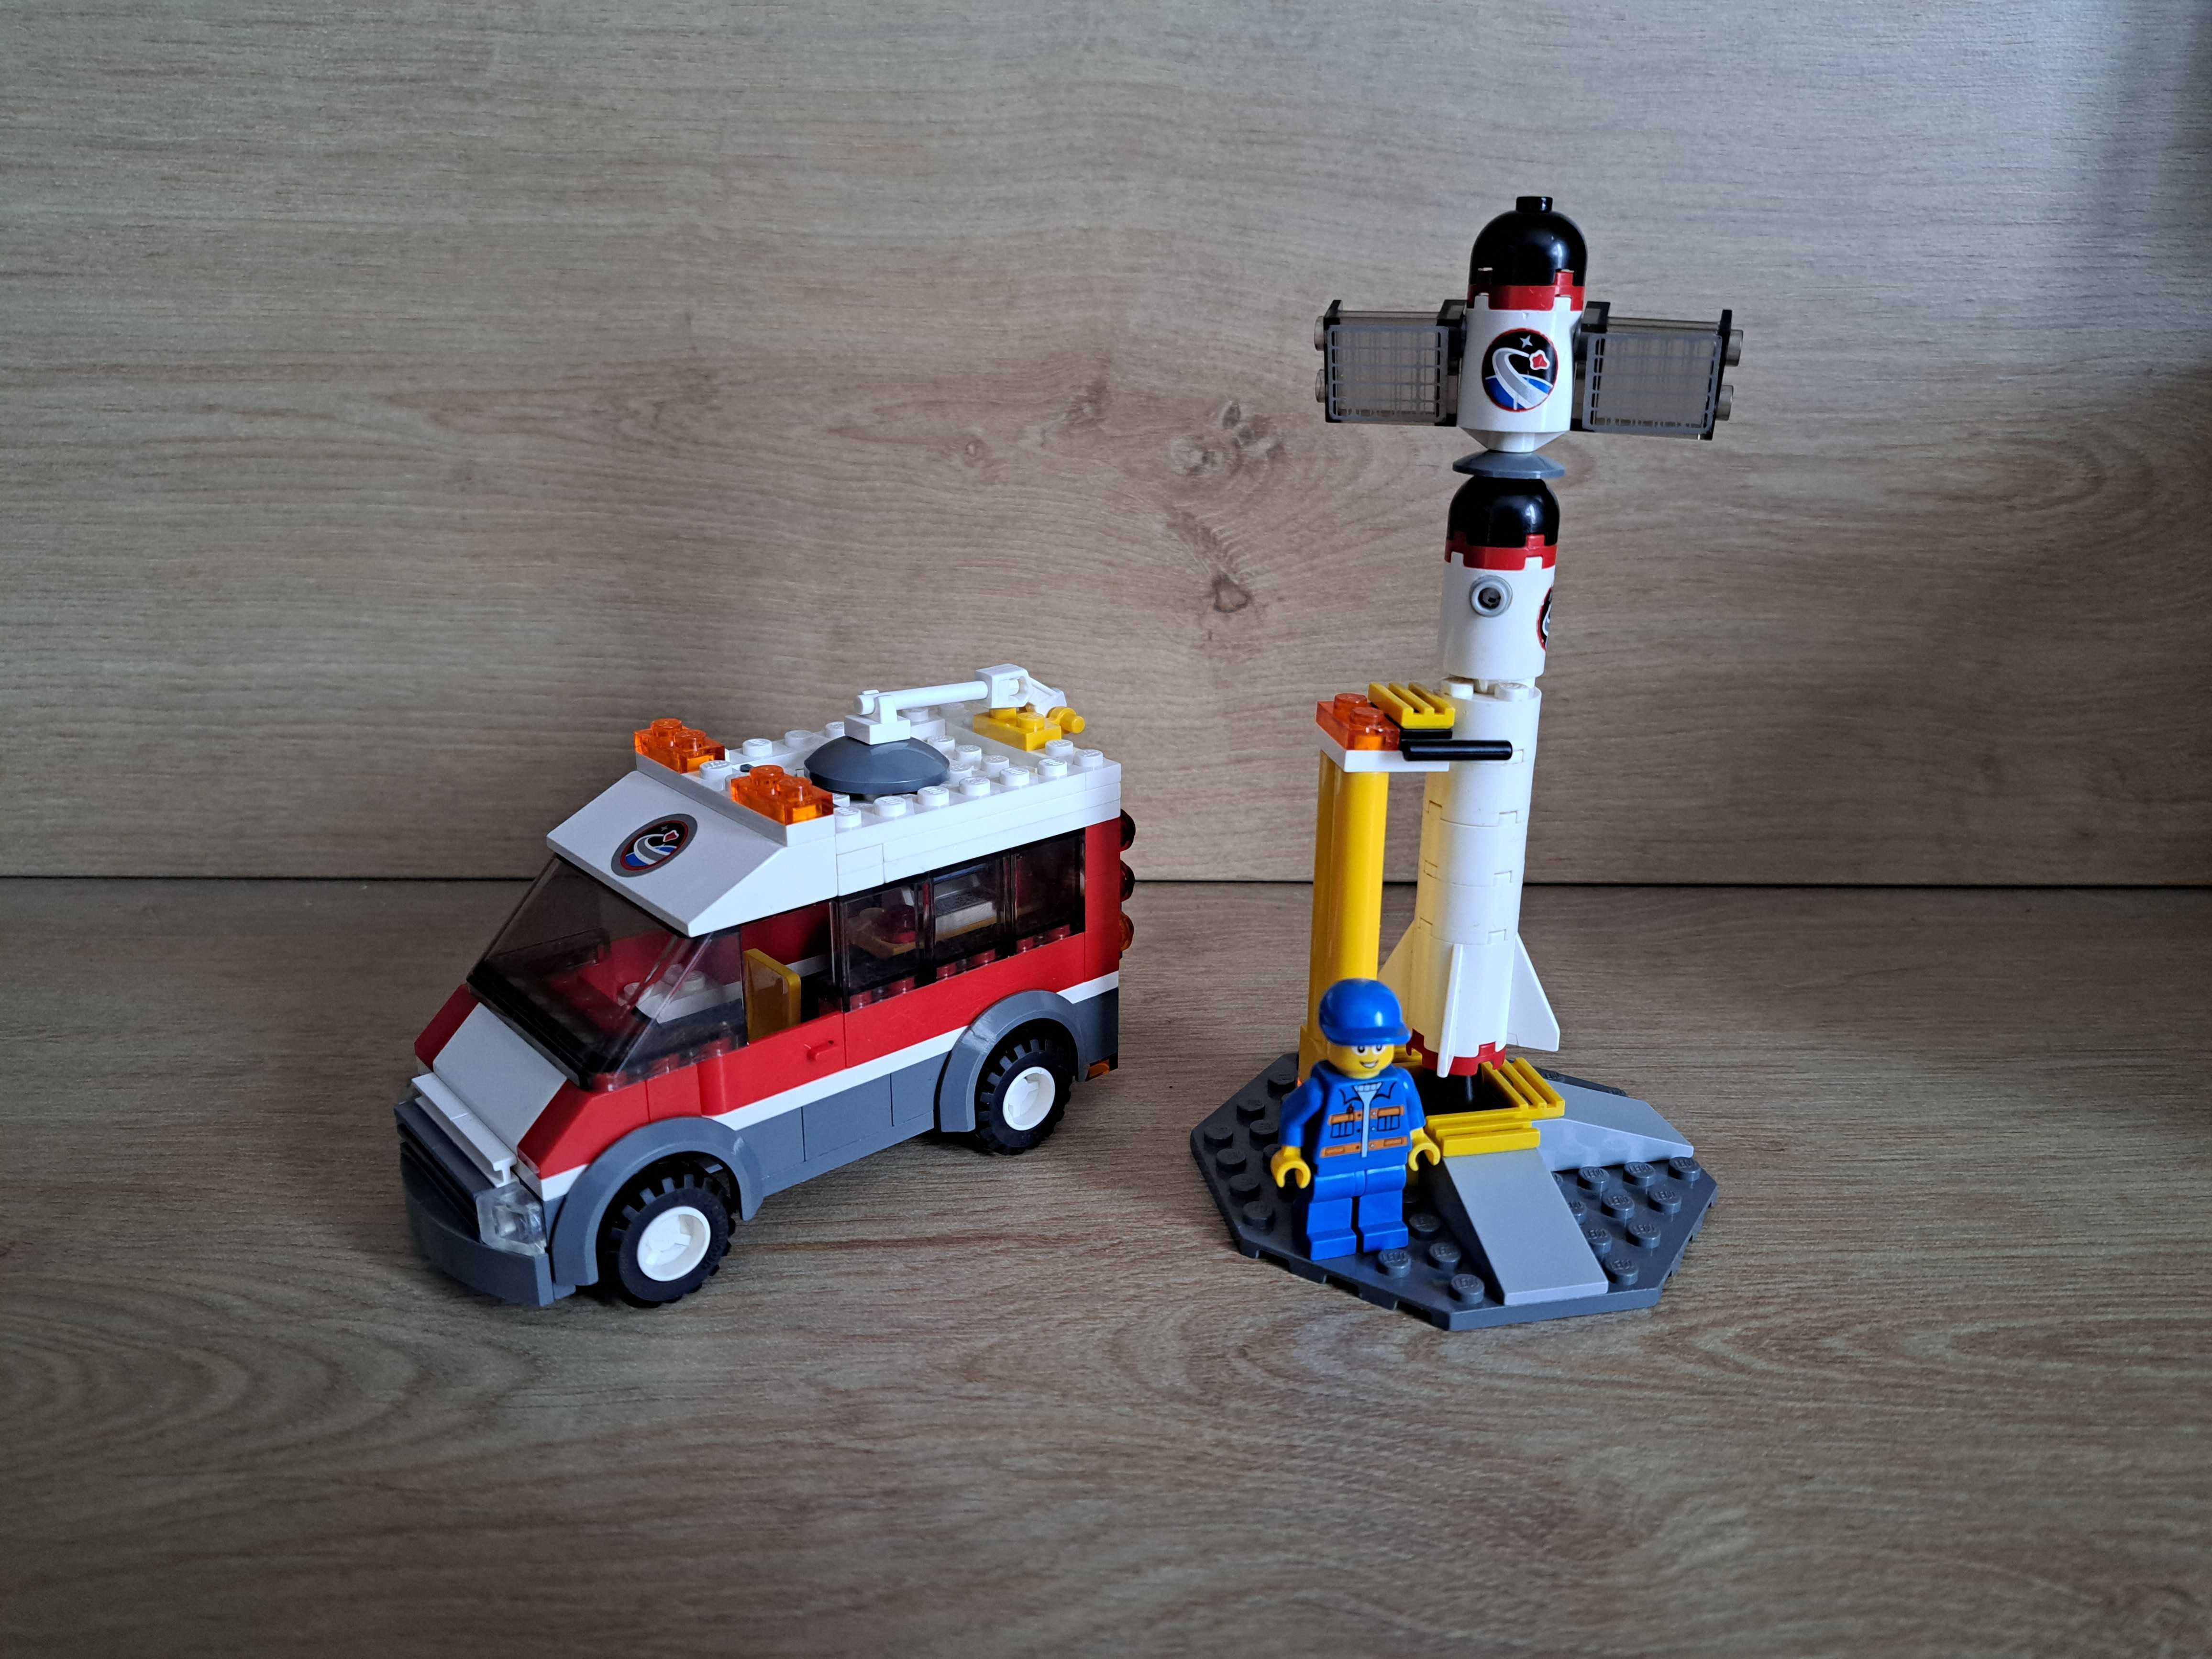 Lego City 3366 Wyrzutnia satelitów